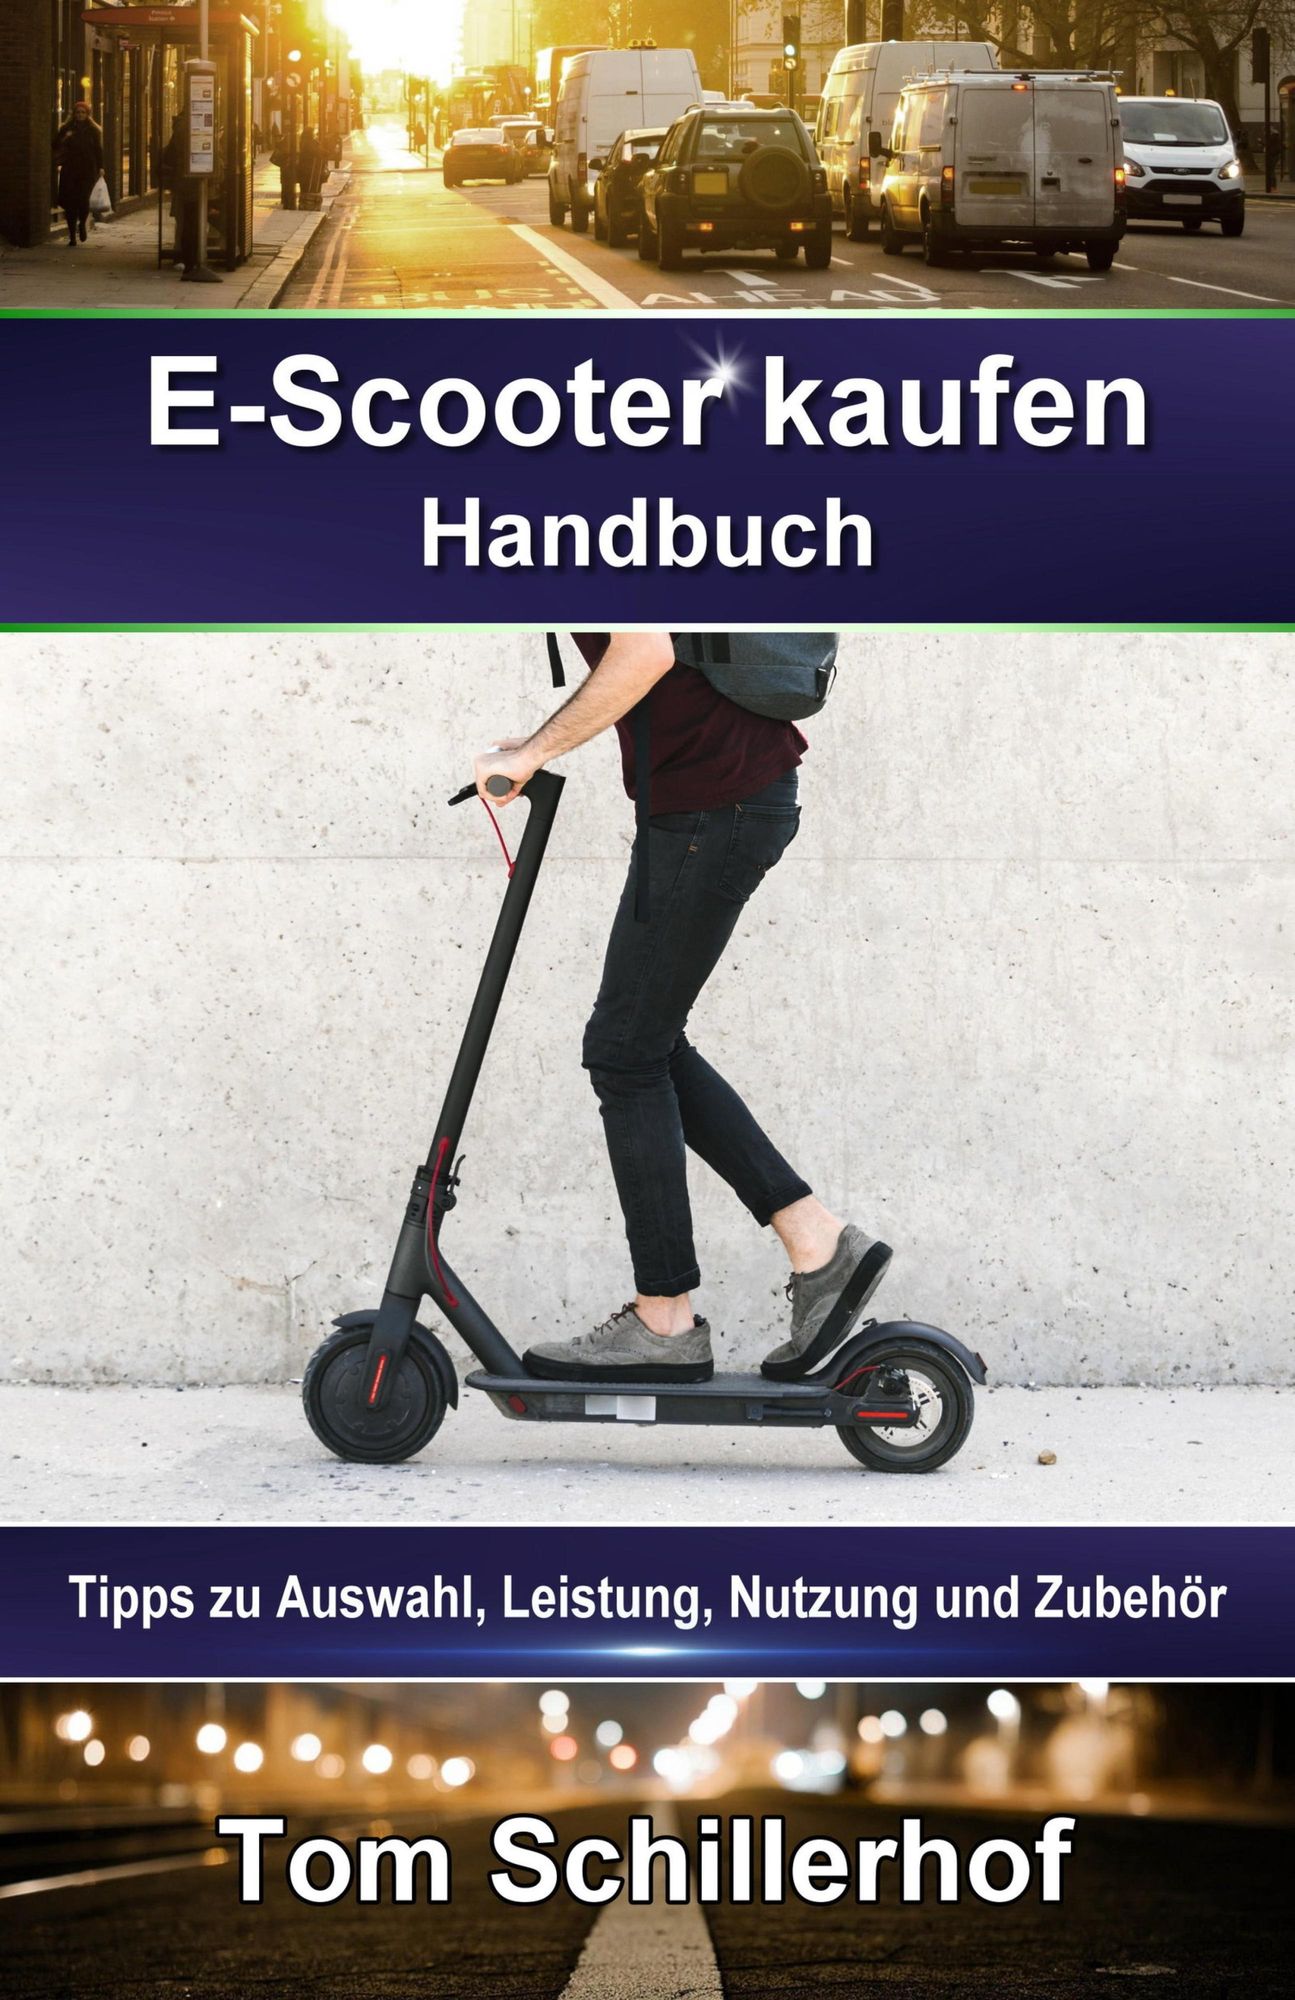 E-Scooter kaufen - Handbuch: Tipps zu Auswahl, Leistung, Nutzung